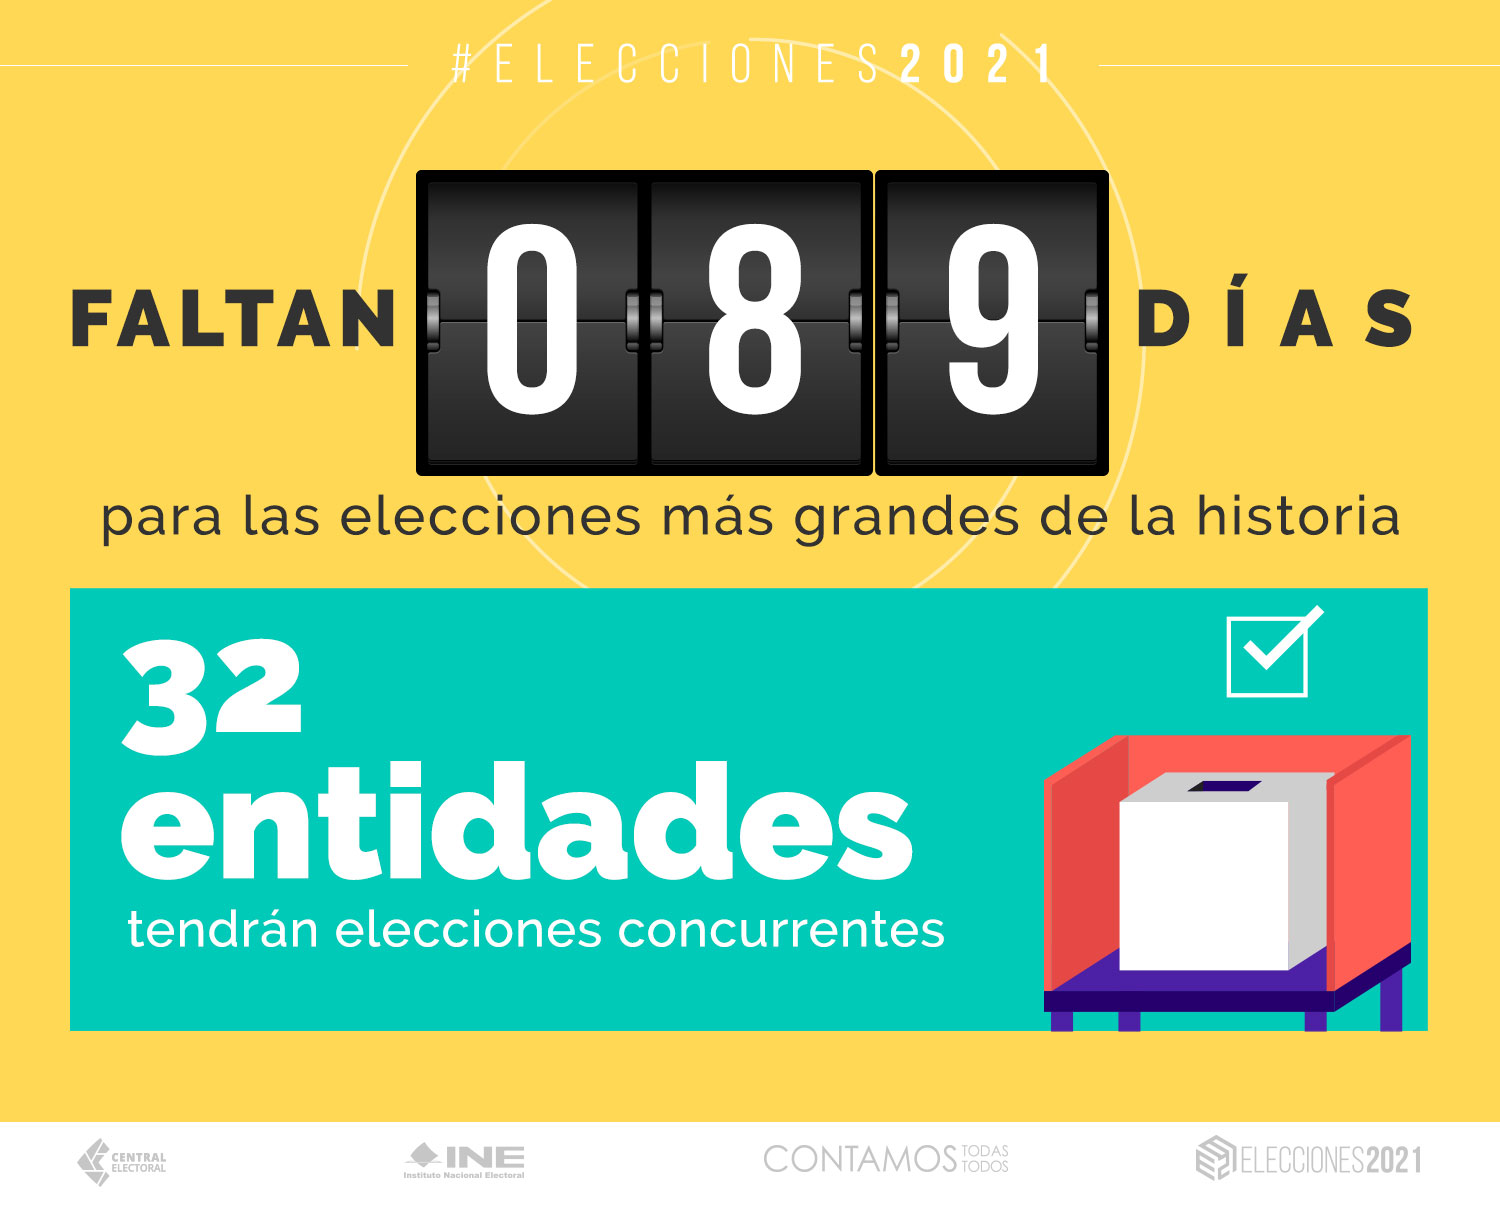 89 Central Electoral